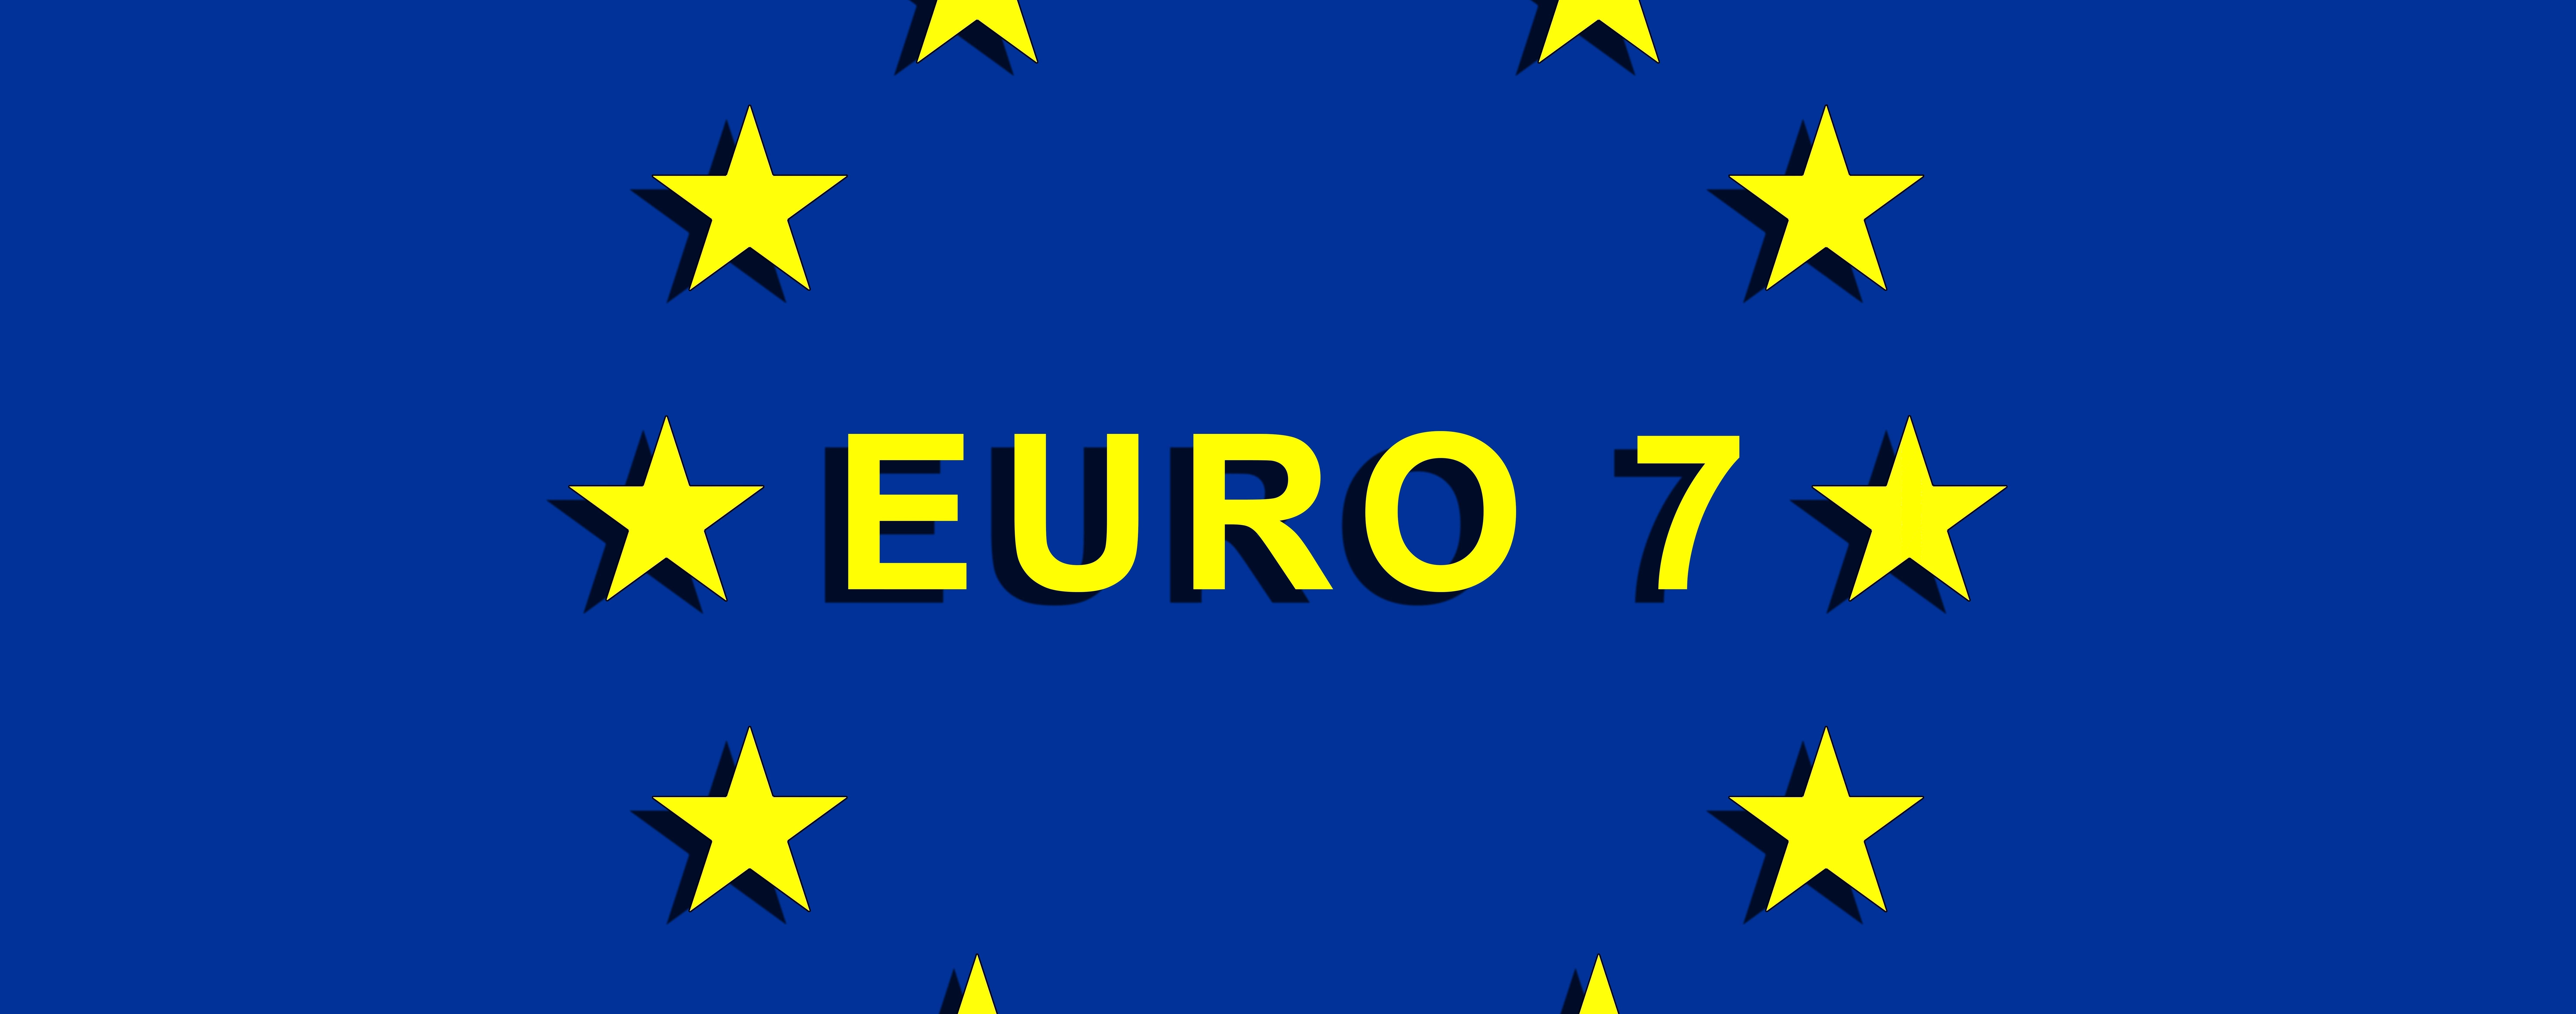 Több államnak sem tetszenek az Euro 7-es normák a jelenlegi formájukban